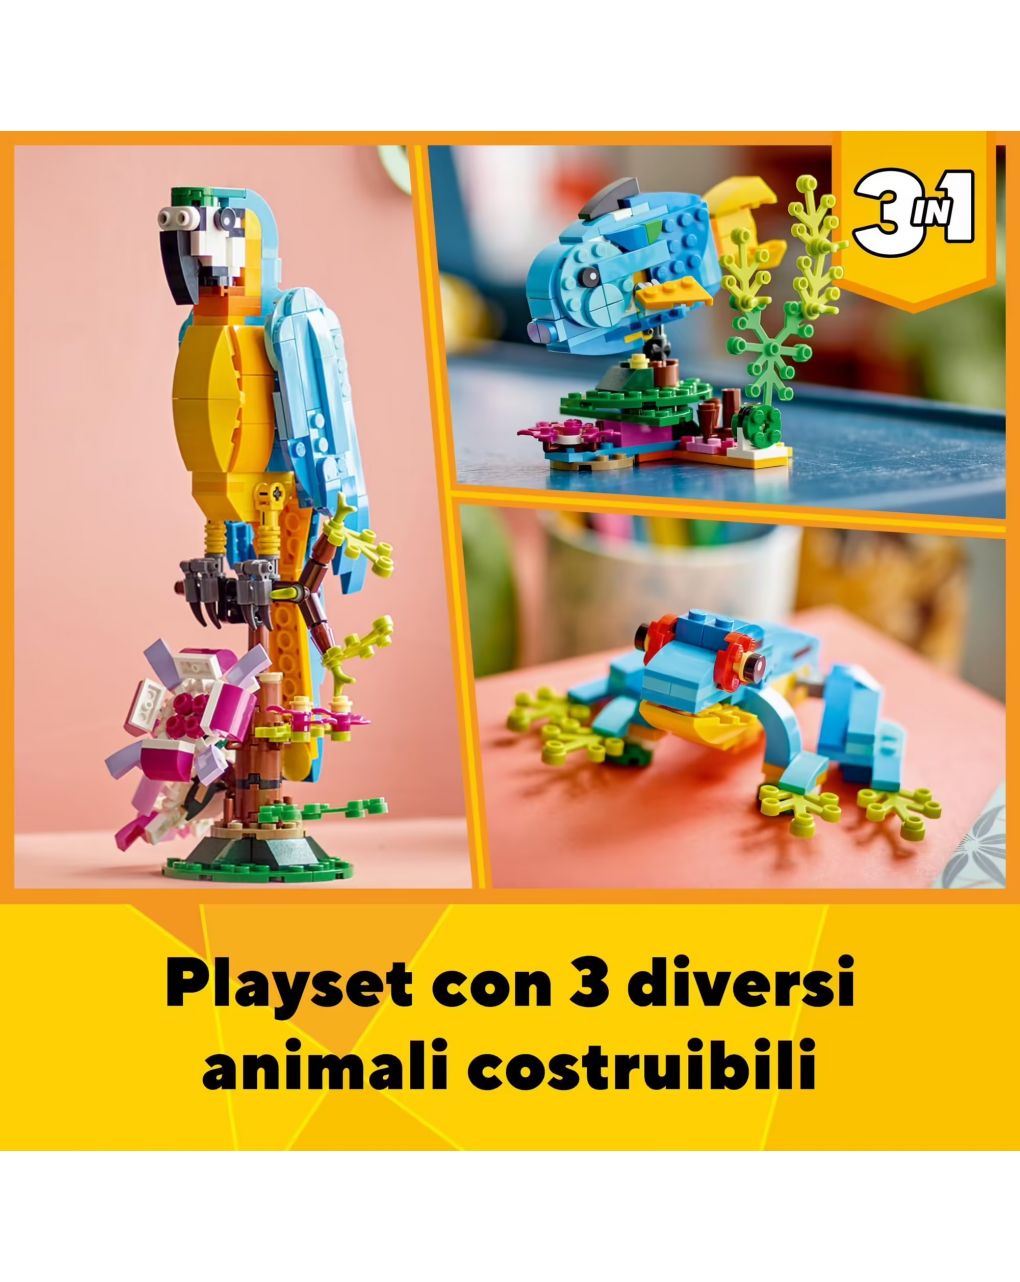 Set pappagallo esotico 3 in 1 con pesce e rana - lego creator - LEGO